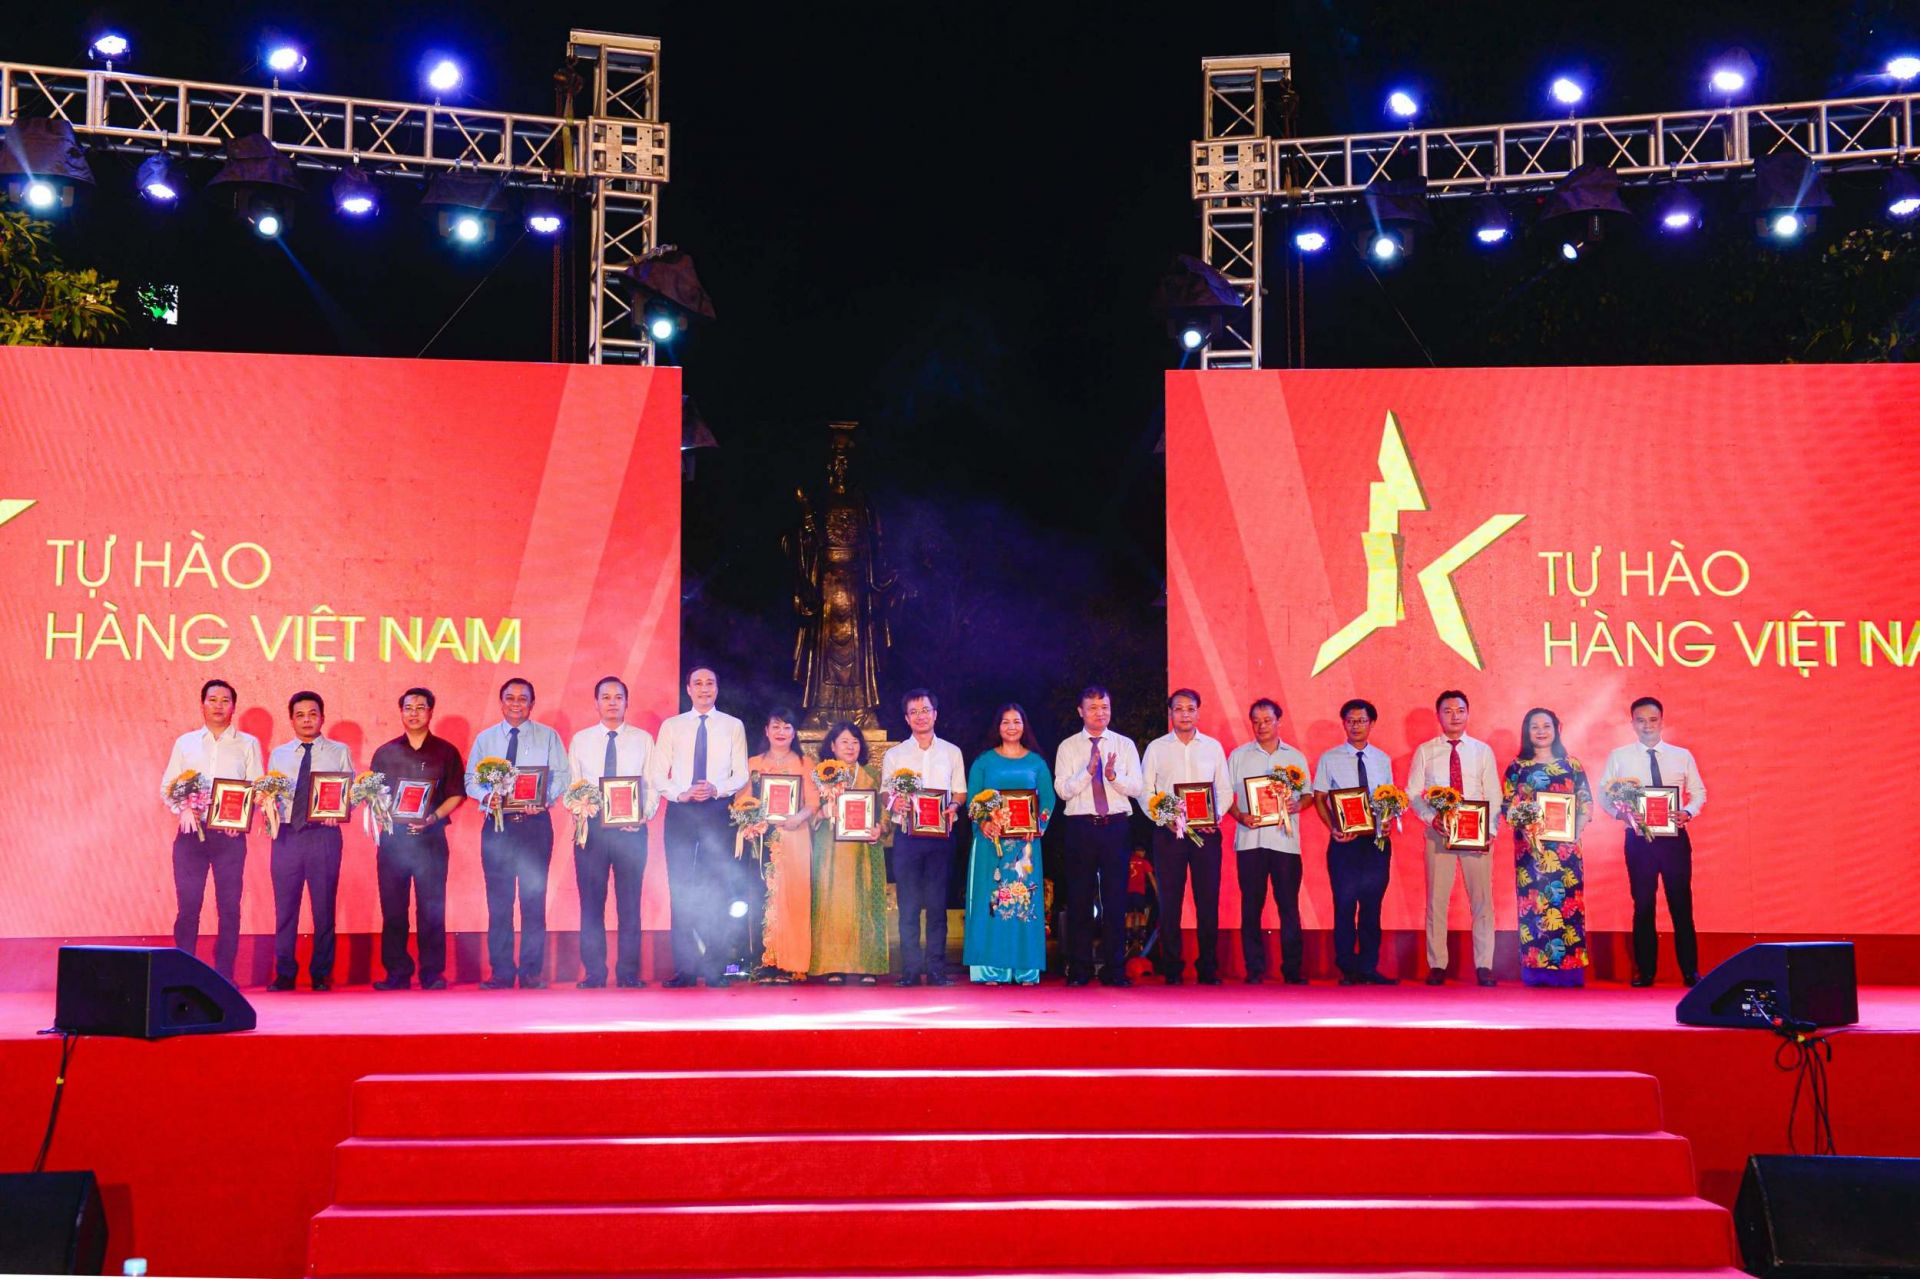 Trao kỷ niệm chương cho các đơn vị tiêu biểu có nhiều đóng góp cho Chương trình Nhận diện hàng Việt Nam - Tự hào hàng Việt Nam năm 2020